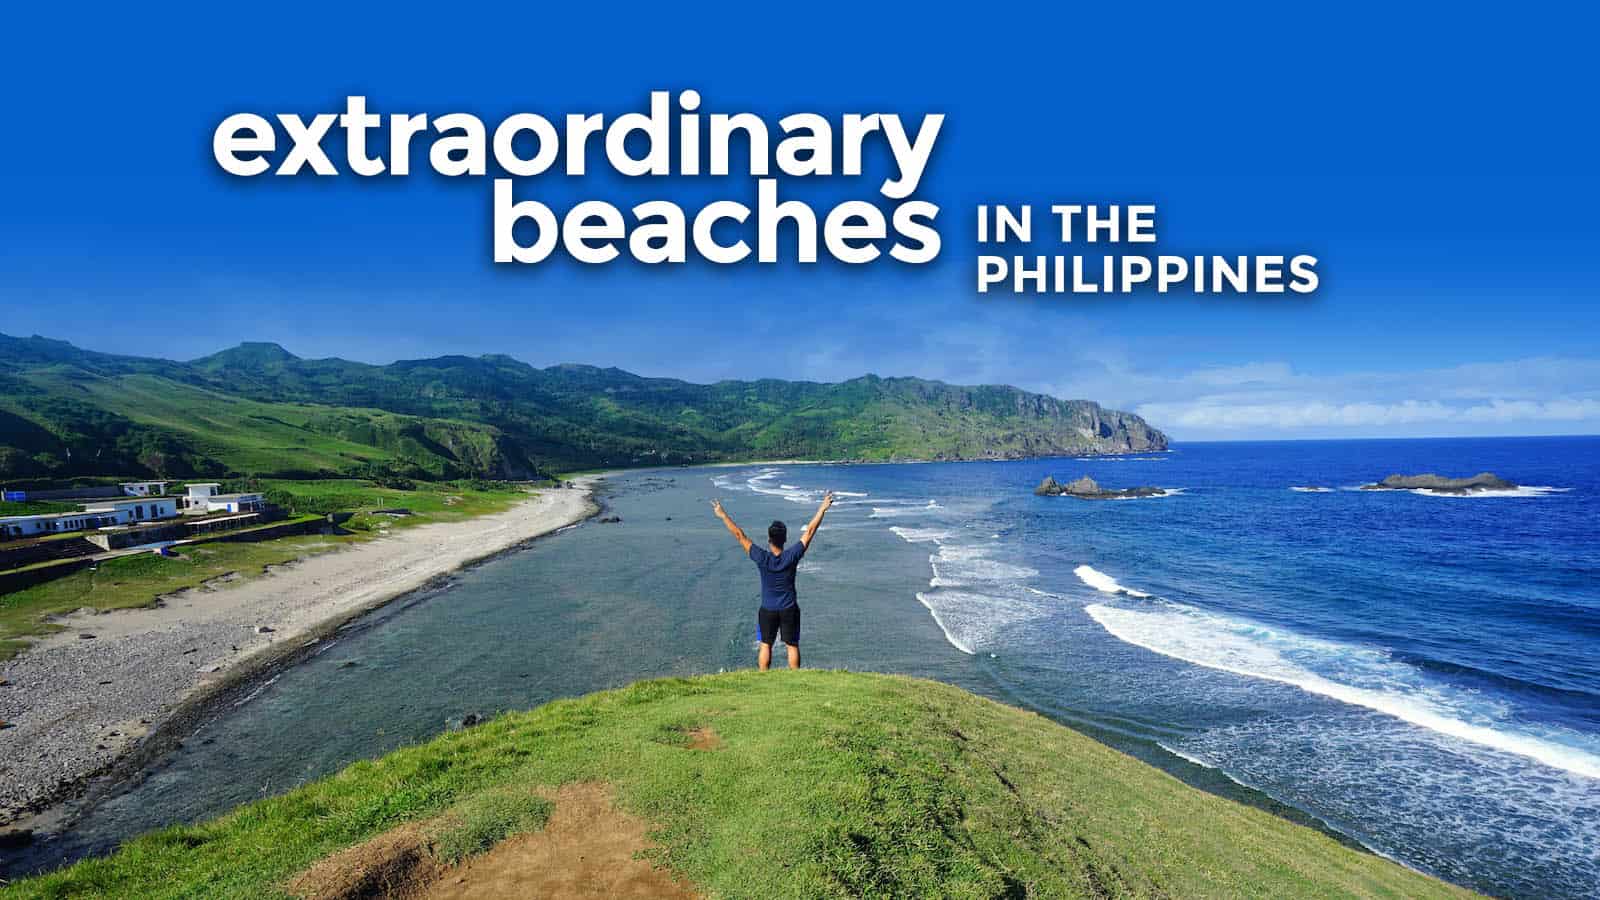 菲律宾值得一游的4个非凡海滩